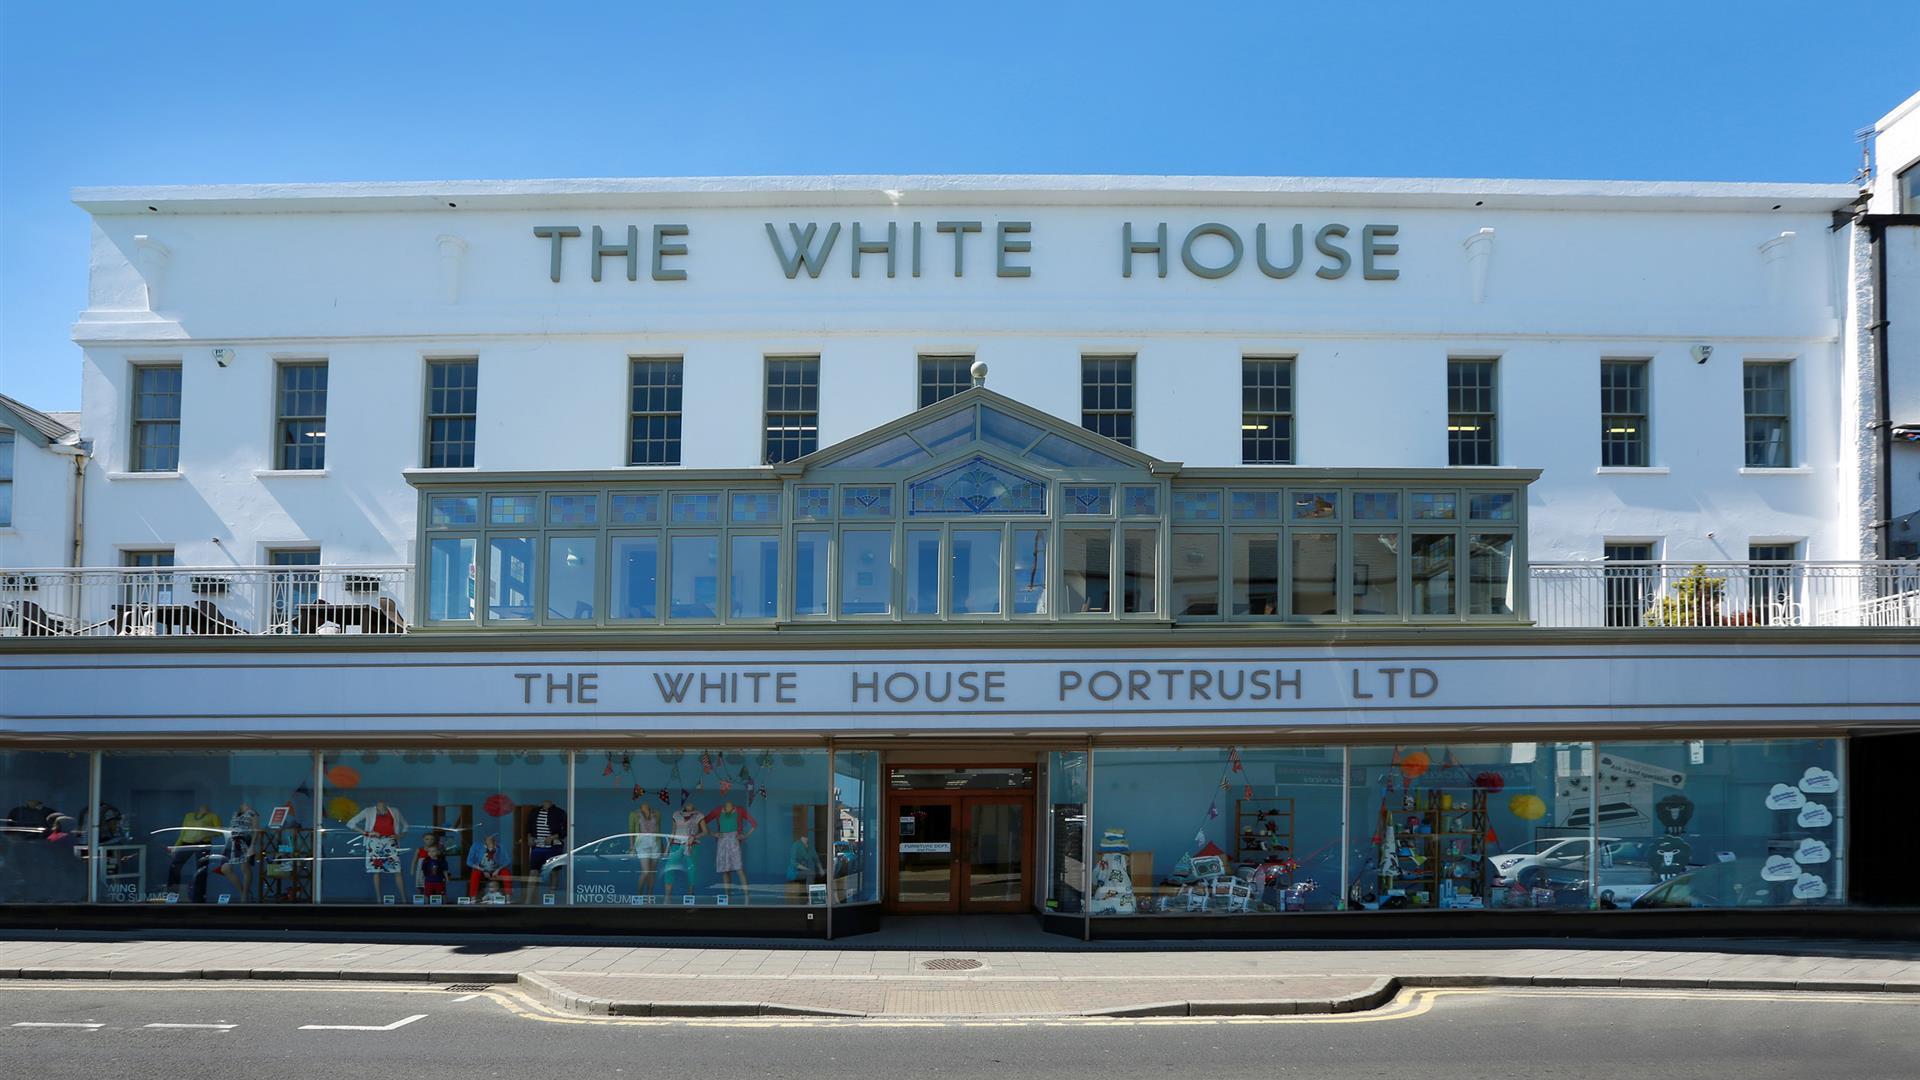 The White House Portrush